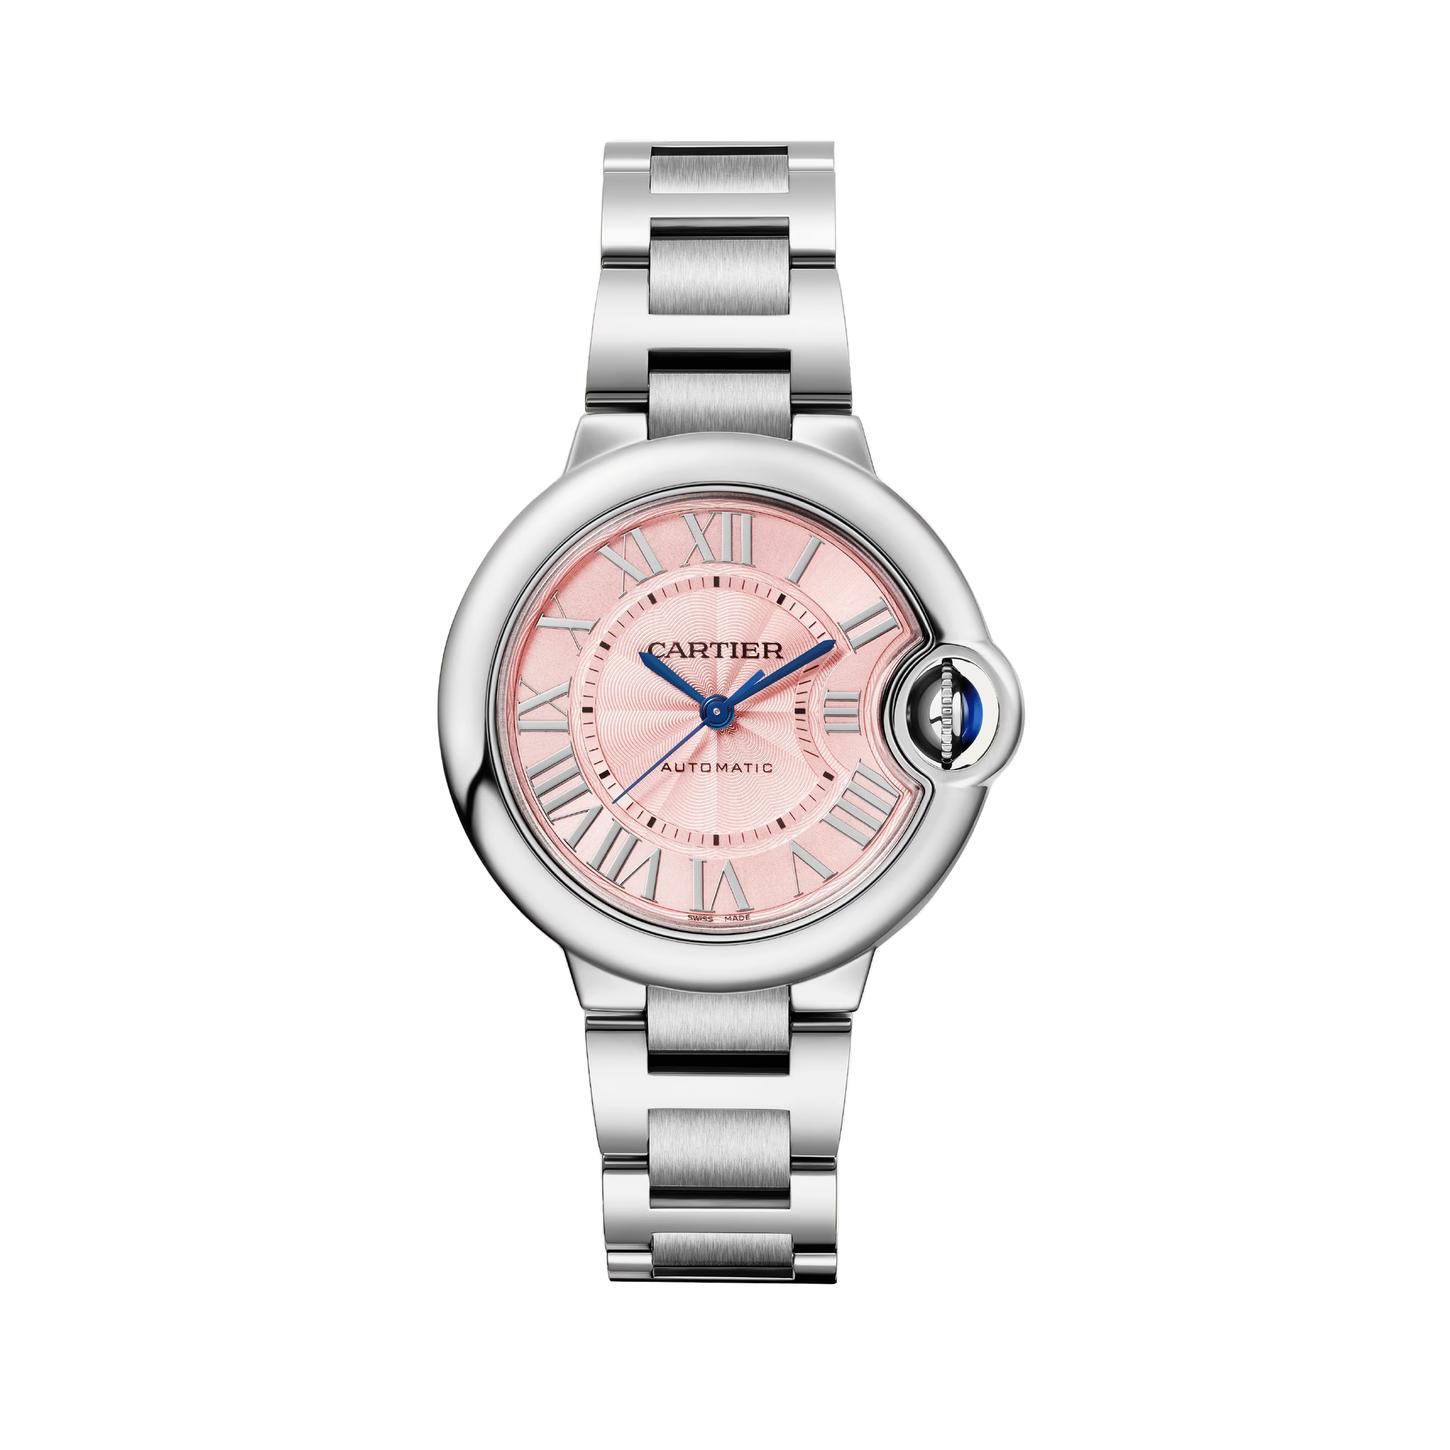 Ballon de Cartier Watch with Pink Dial, 33mm 9